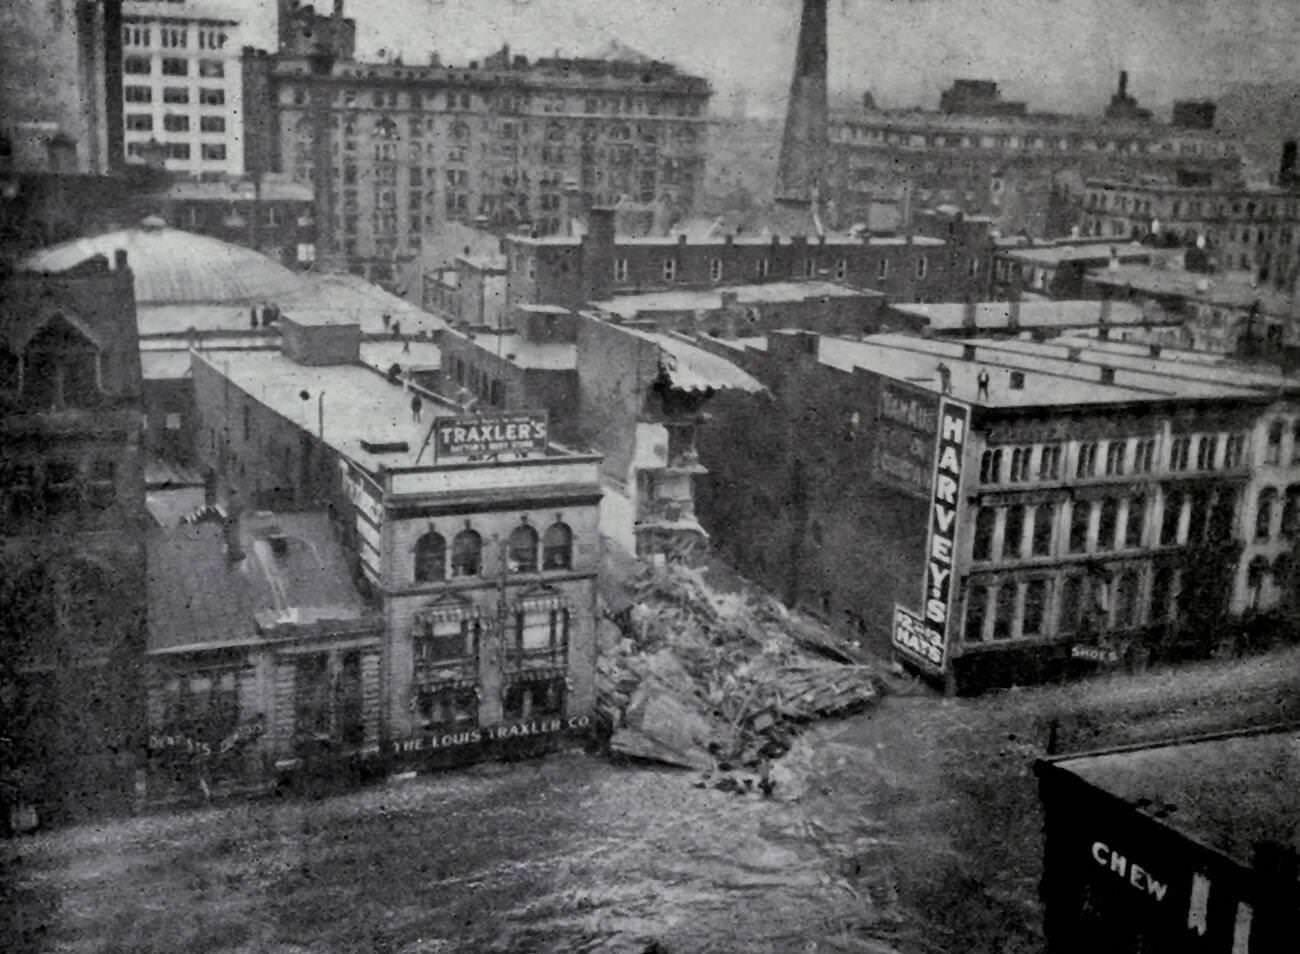 Ten feet of water on Main Street, Dayton, Ohio, 1913 flood.